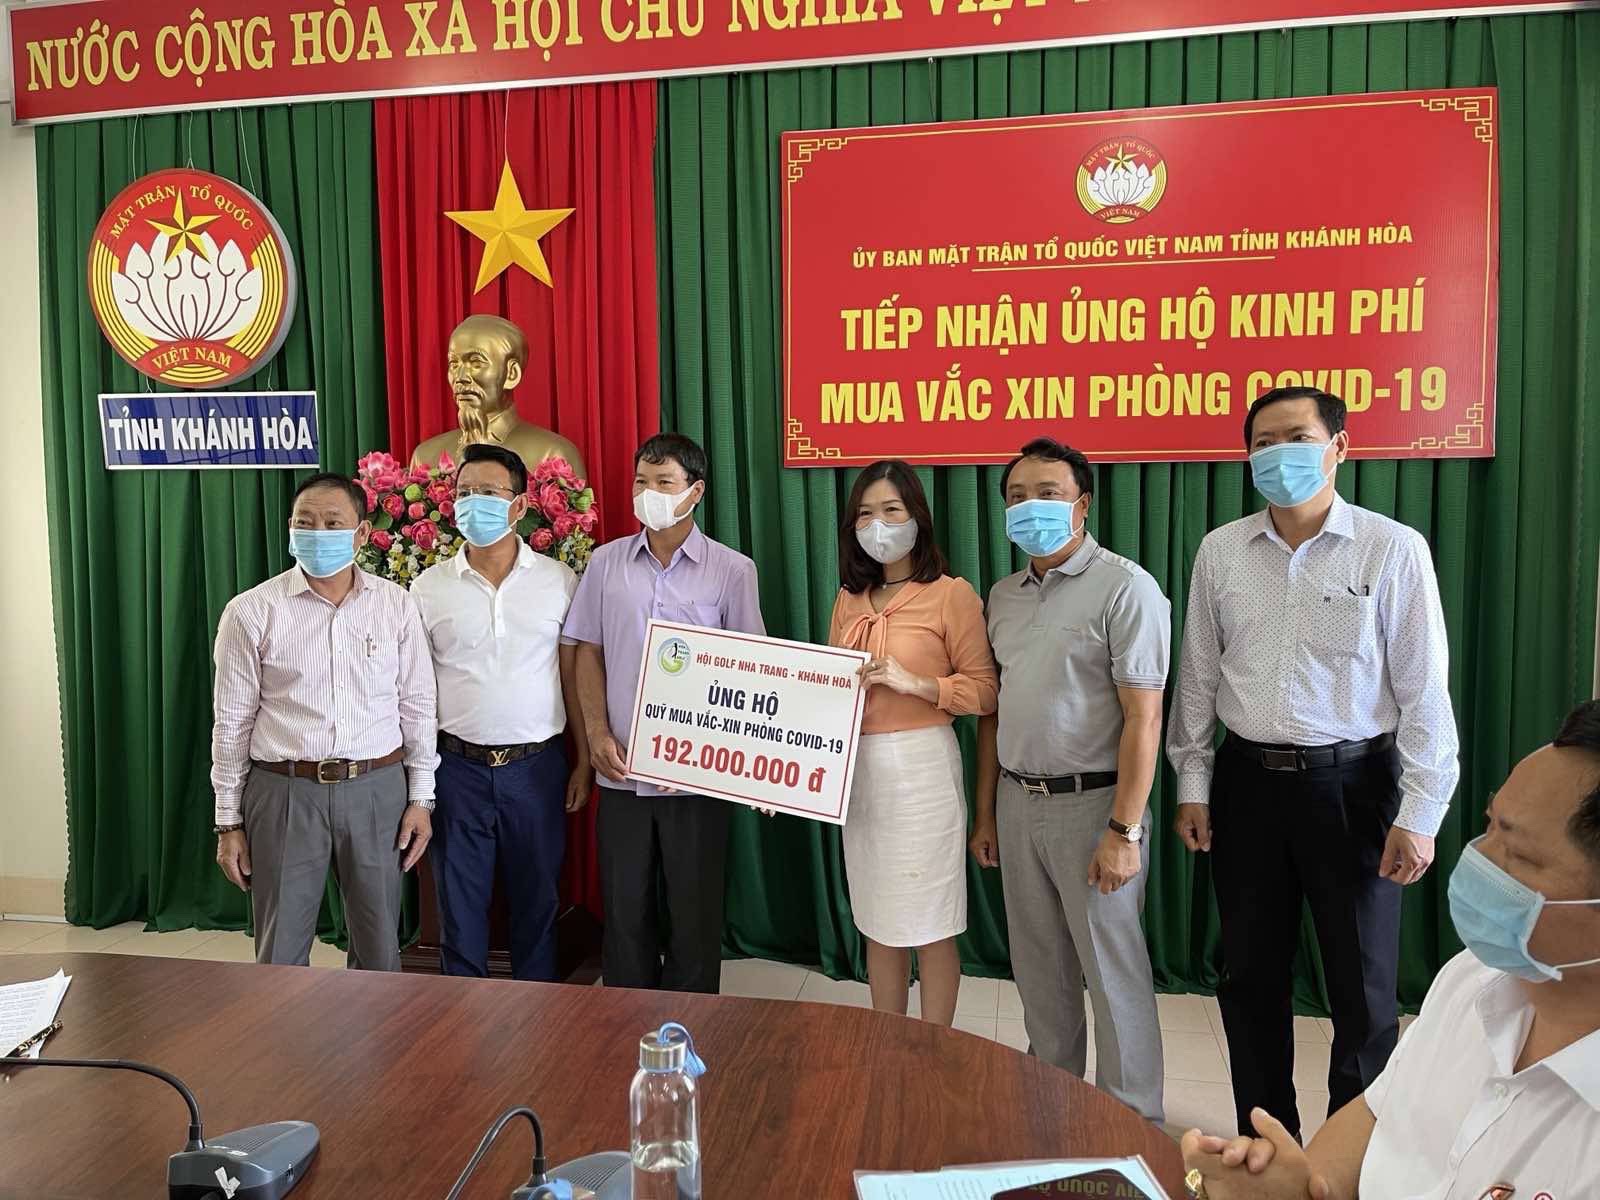 Hội golf Nha Trang – Khánh Hoà ủng hộ hơn 300 triệu đồng cho quỹ phòng chống Covid 19